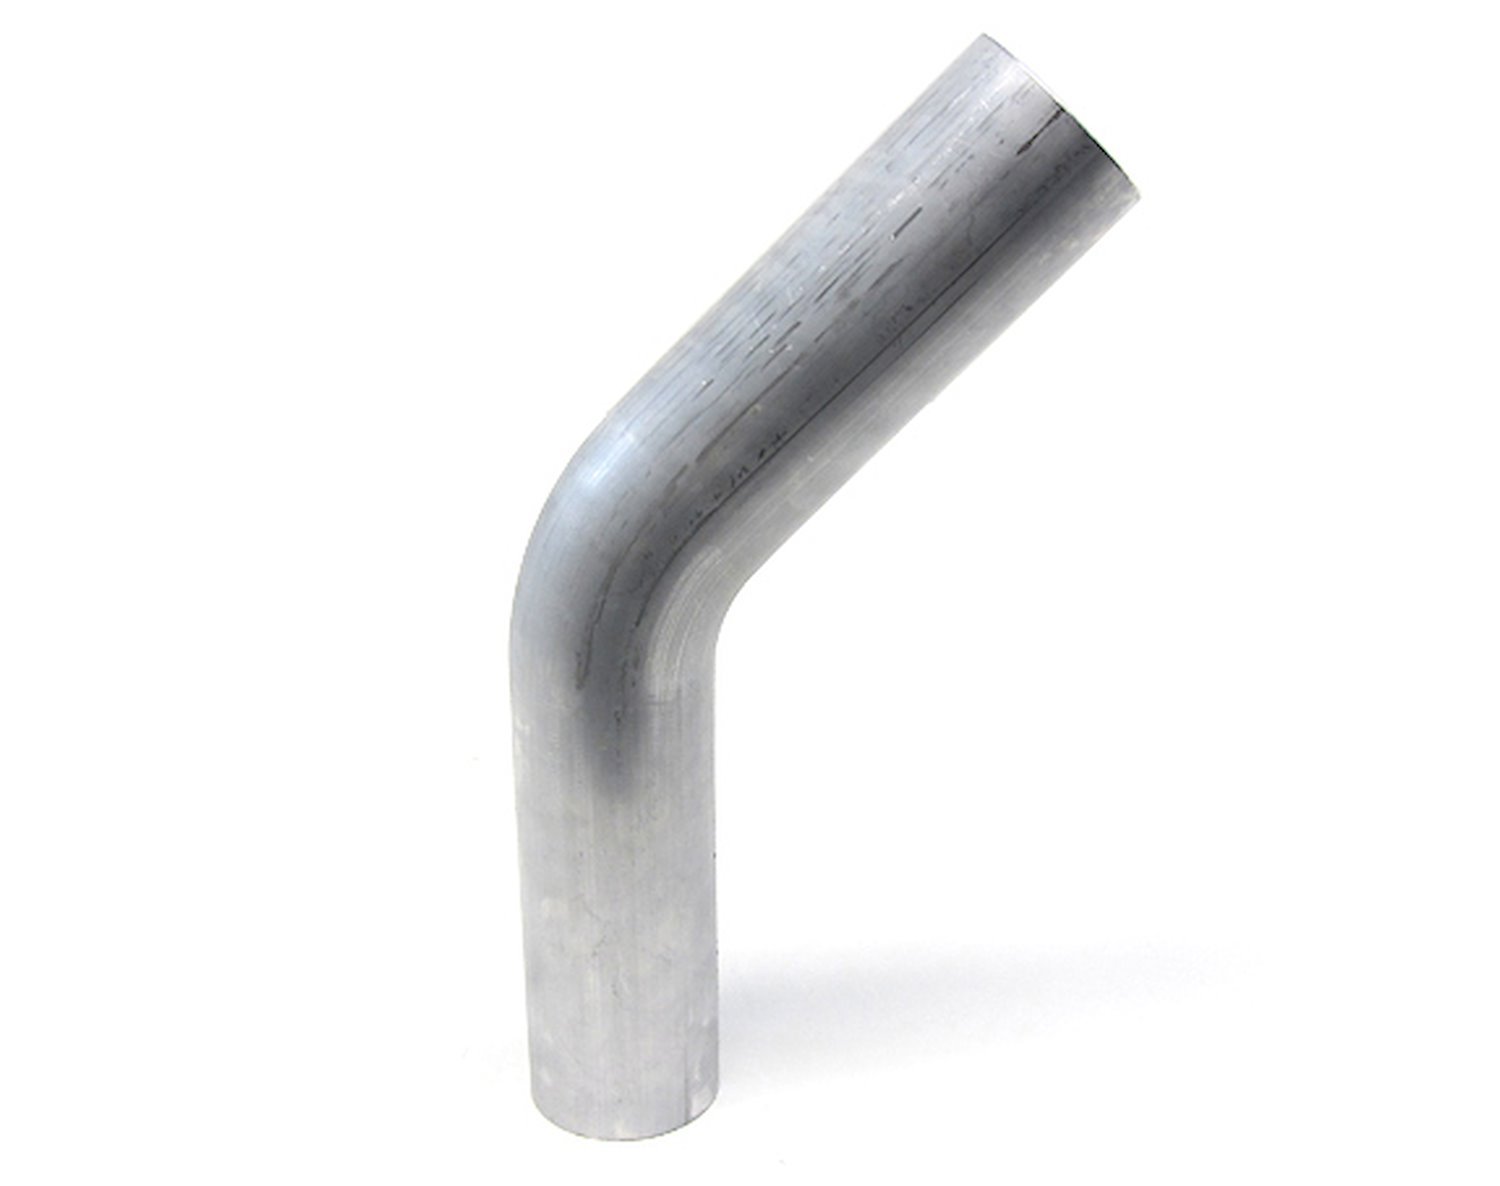 AT45-275-CLR-43 Aluminum Elbow Tube, 6061 Aluminum, 45-Degree Bend Elbow Tubing, 2-3/4 in. OD, Large Radius, 4-5/16 in. CLR